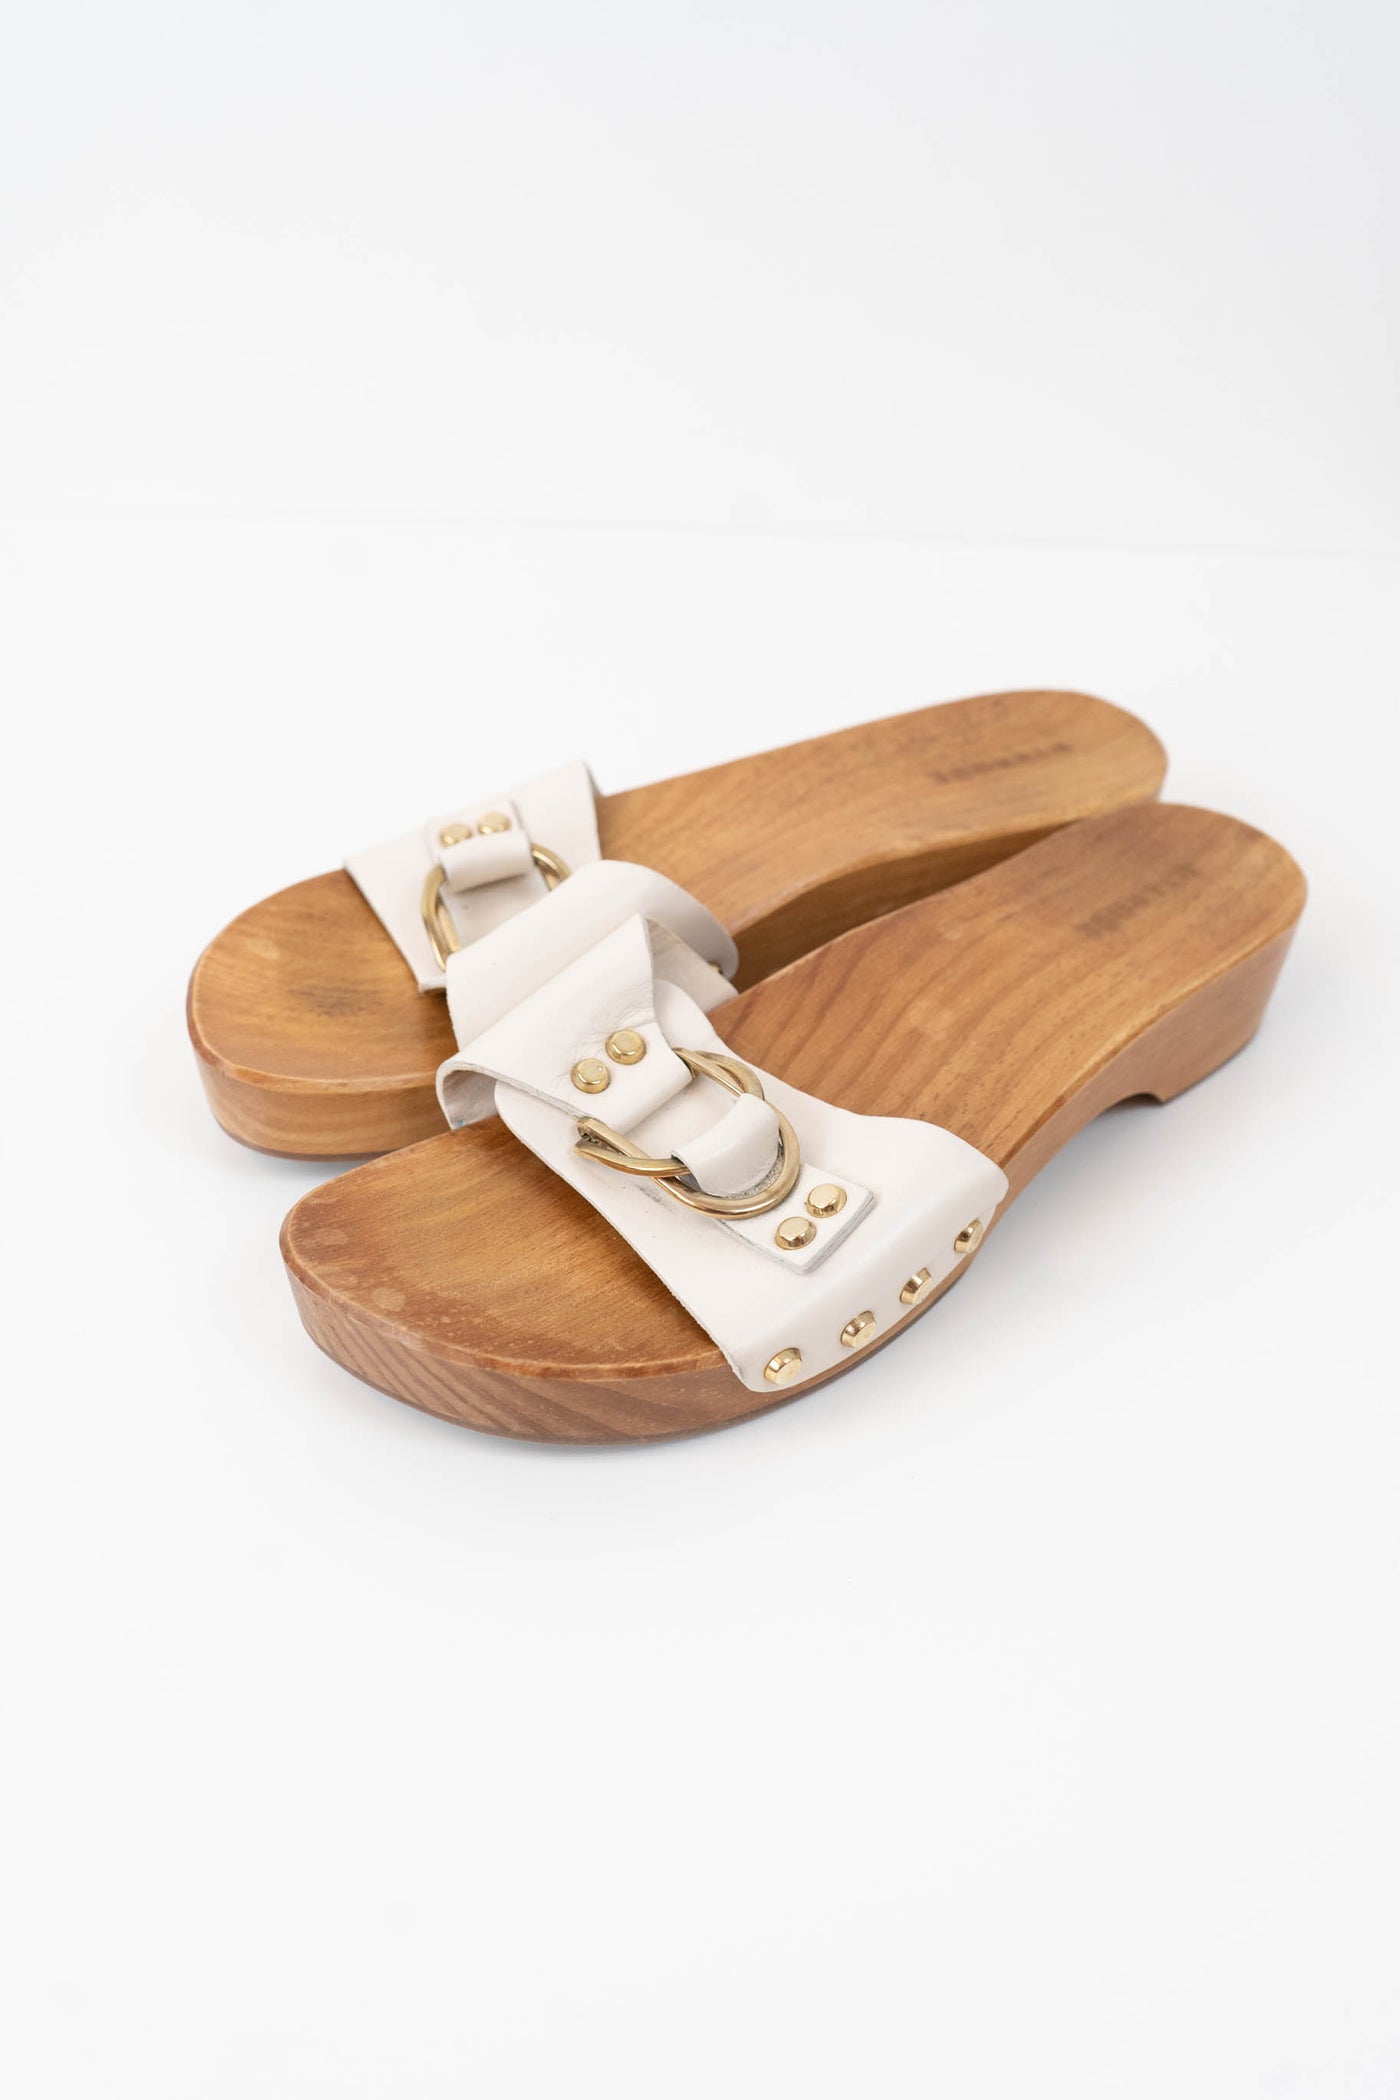 Sandalias blancas suela madera